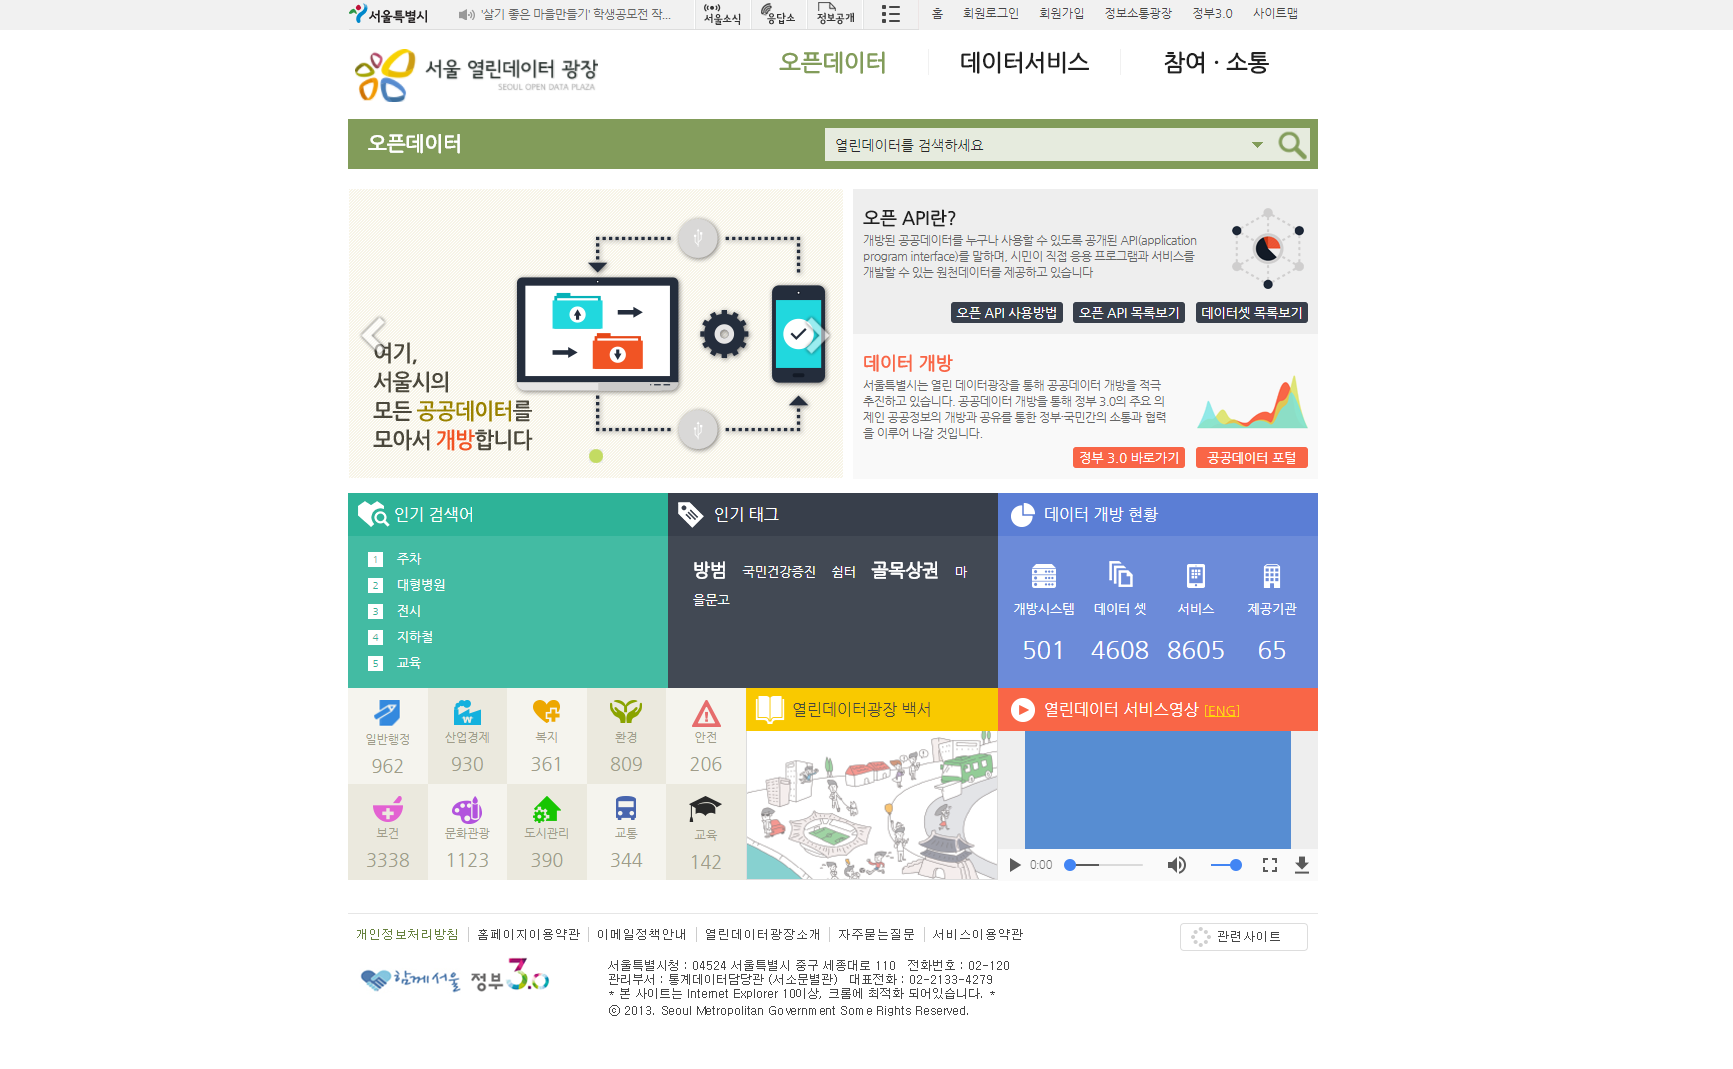 Seoul Open Data Square (http://data.seoul.go.kr/) Portal screen